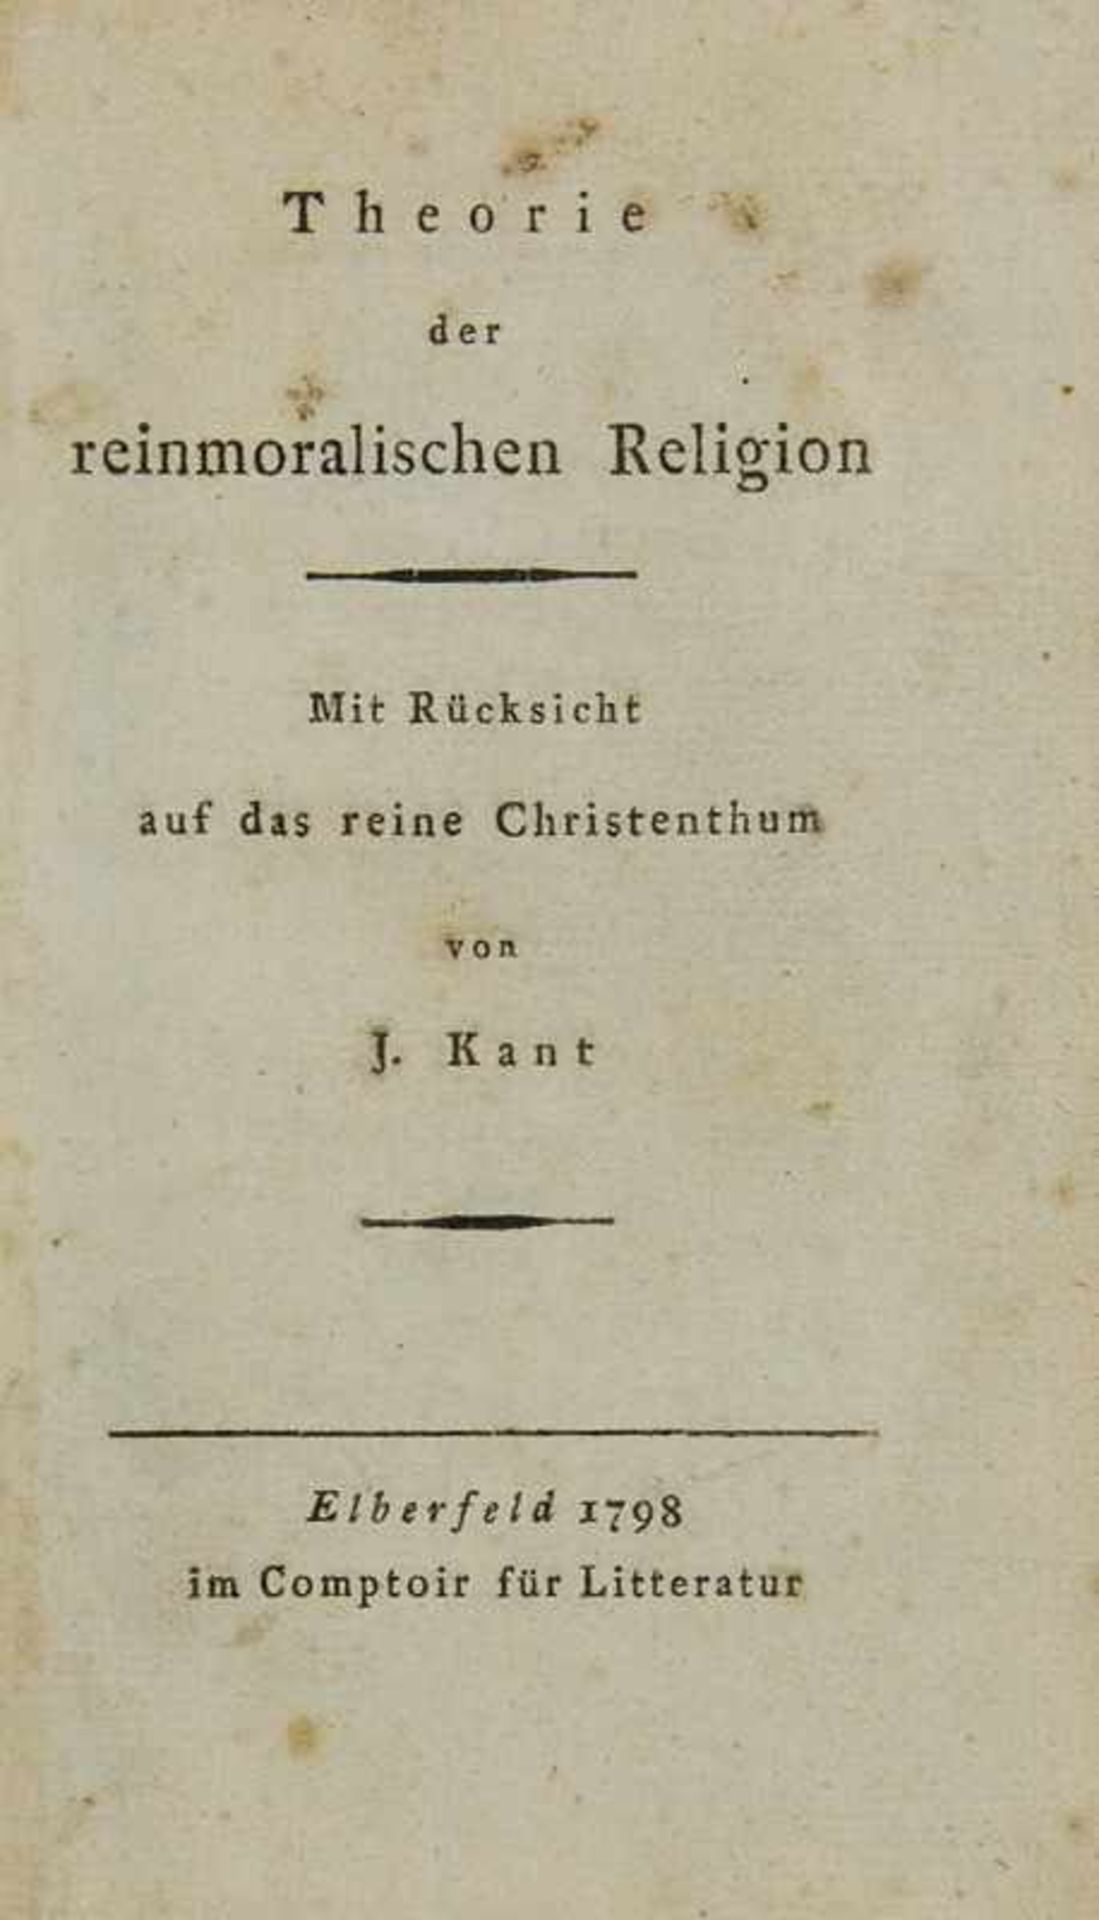 Kant, Immanuel Reiner, G. L Theorie der reinmoralischen Religion. Mit Rücksicht auf das reine